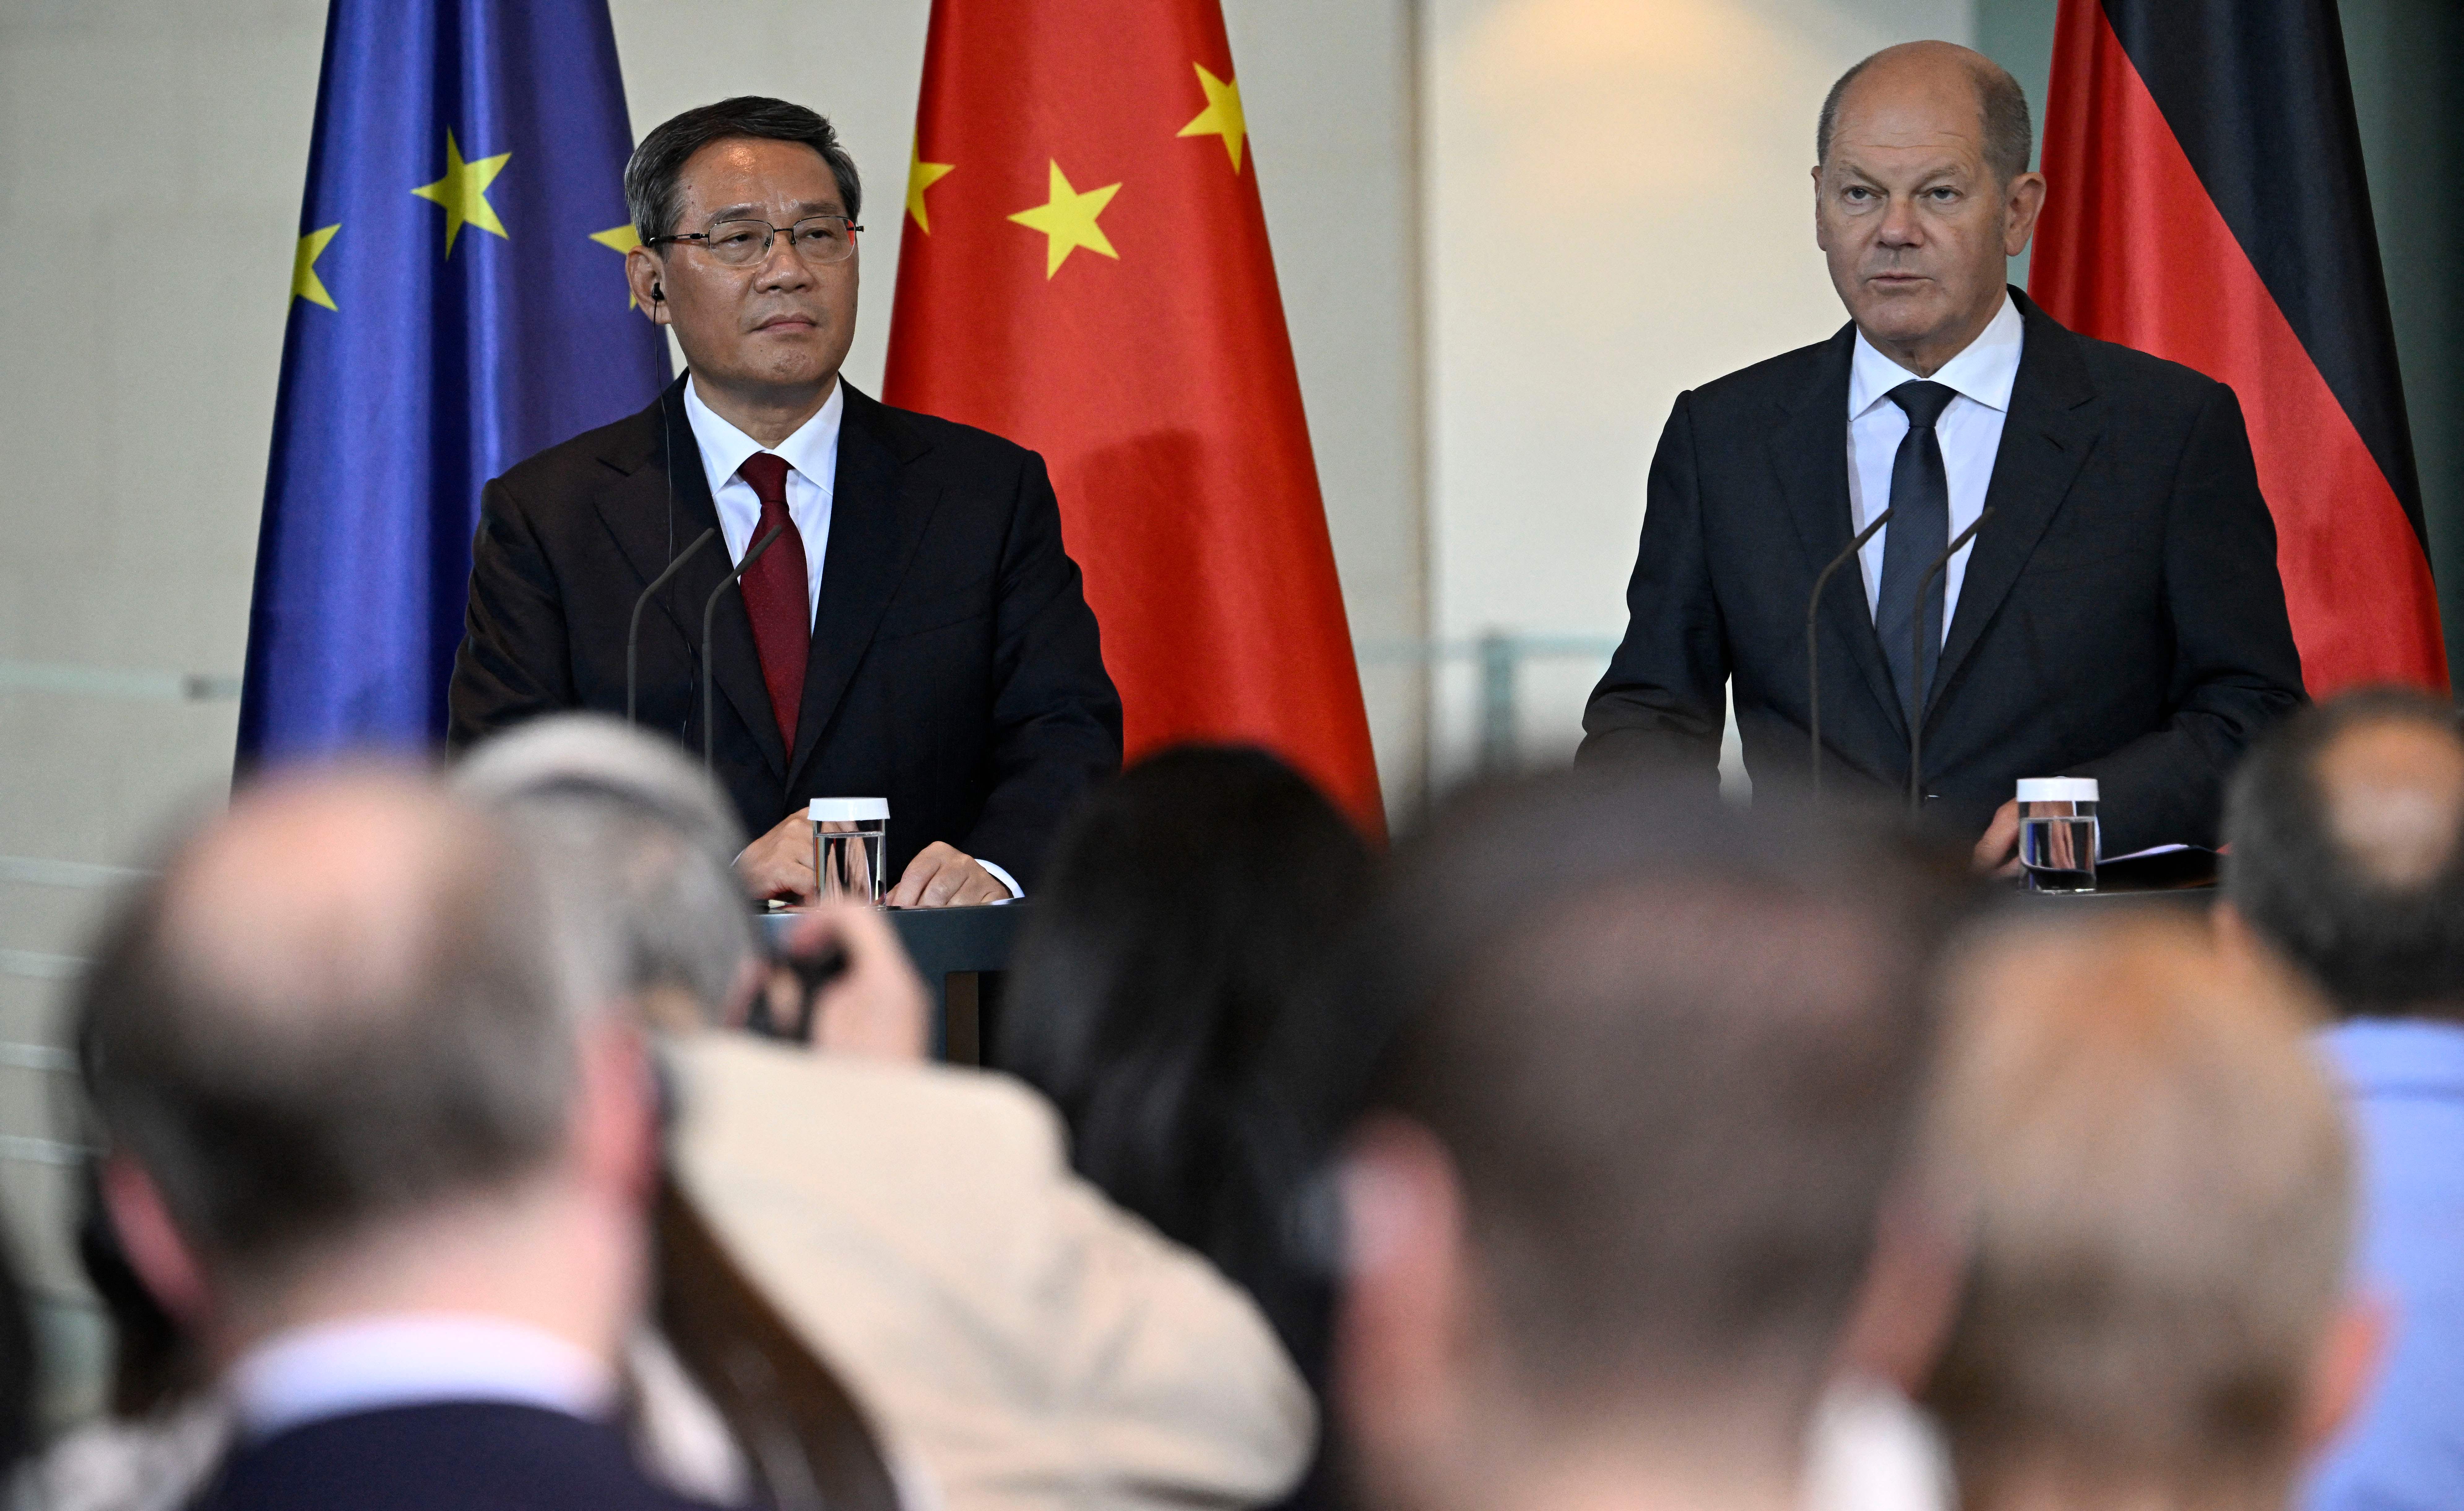 Đức đang kêu gọi các công ty “giảm rủi ro” khỏi Trung Quốc và nhấn mạnh rằng họ không tìm cách tách rời